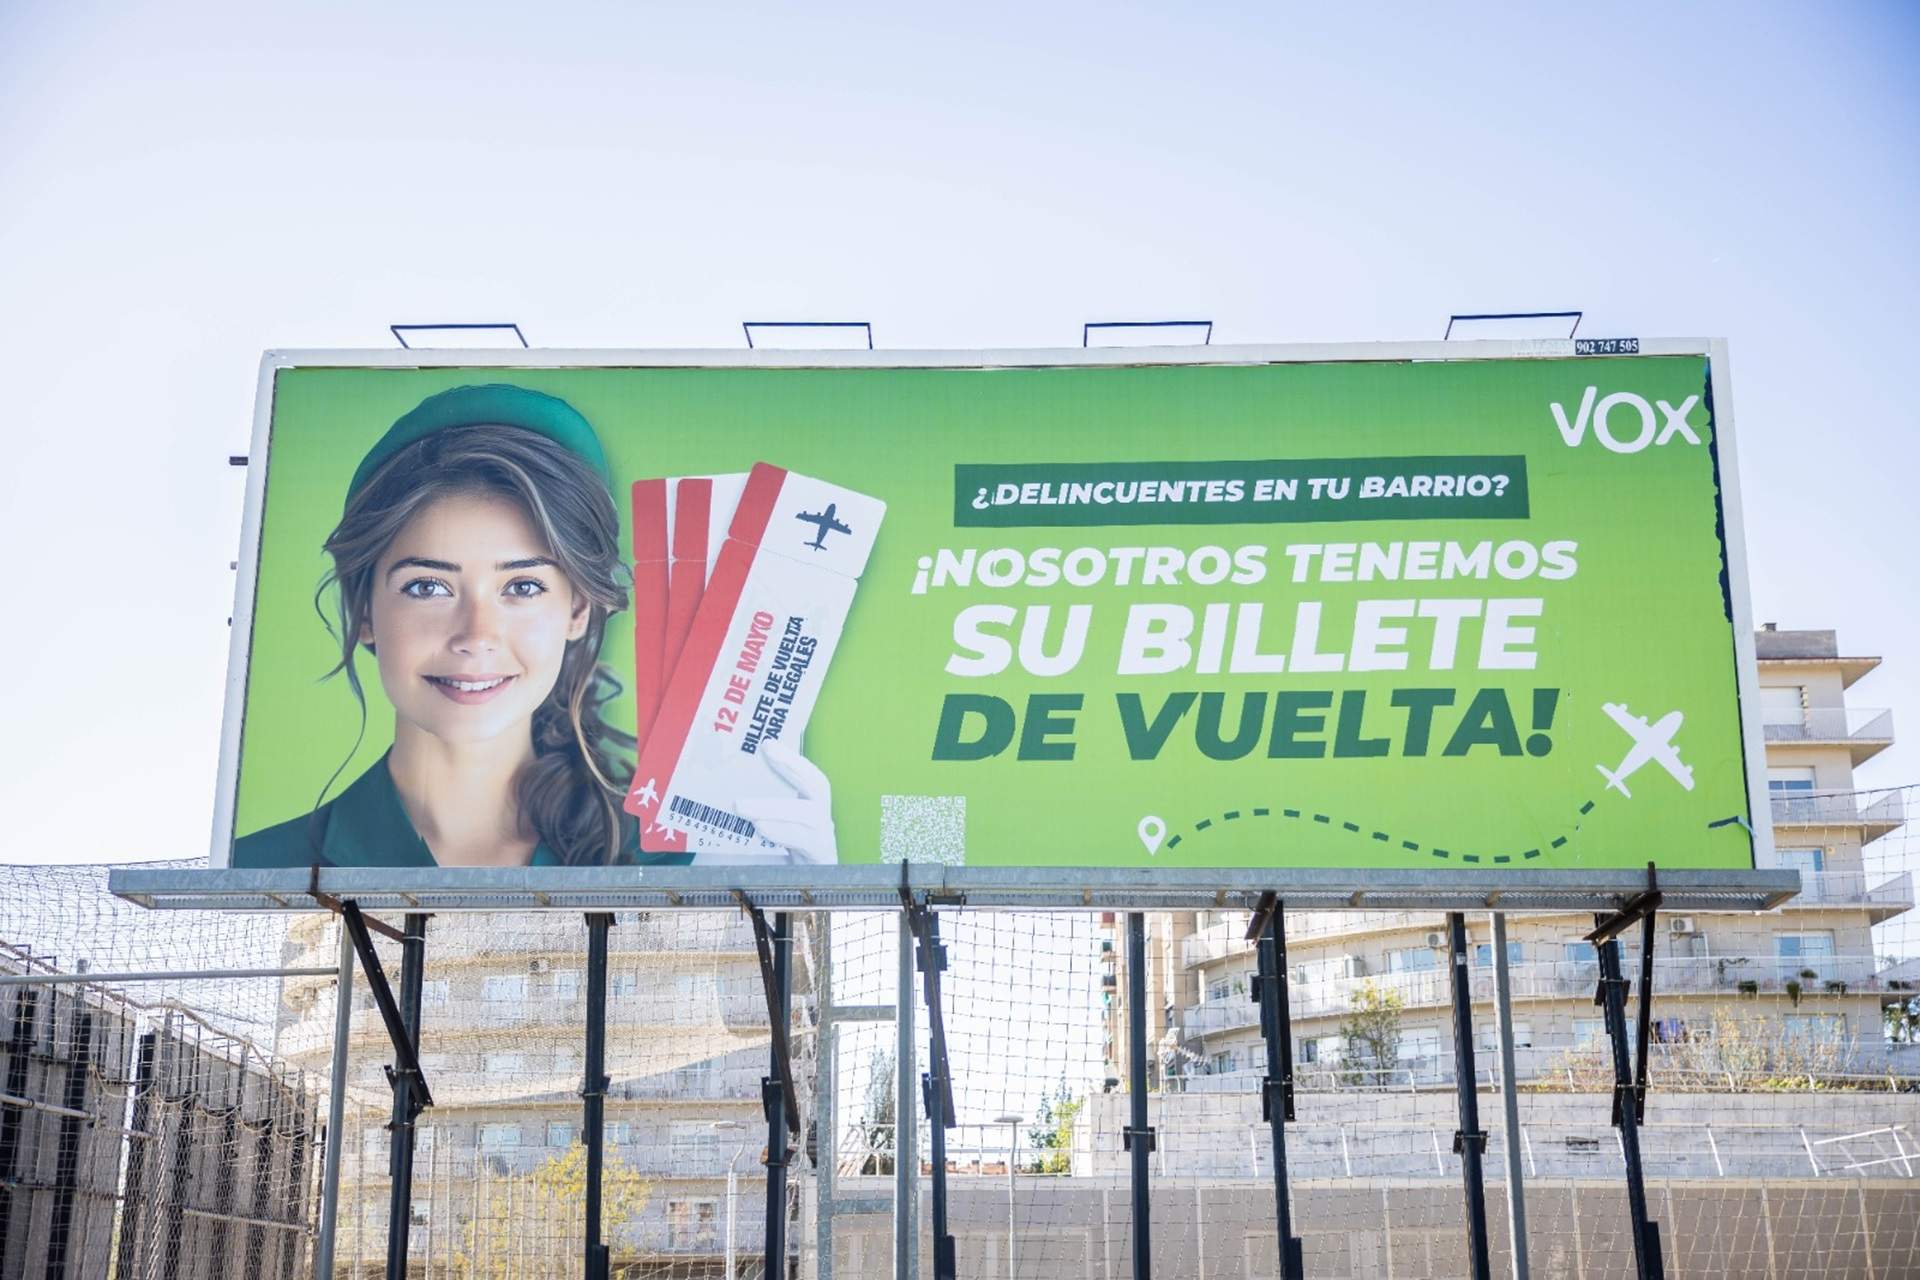 La Junta Electoral obliga a Vox a retirar los carteles de campaña contra los inmigrantes